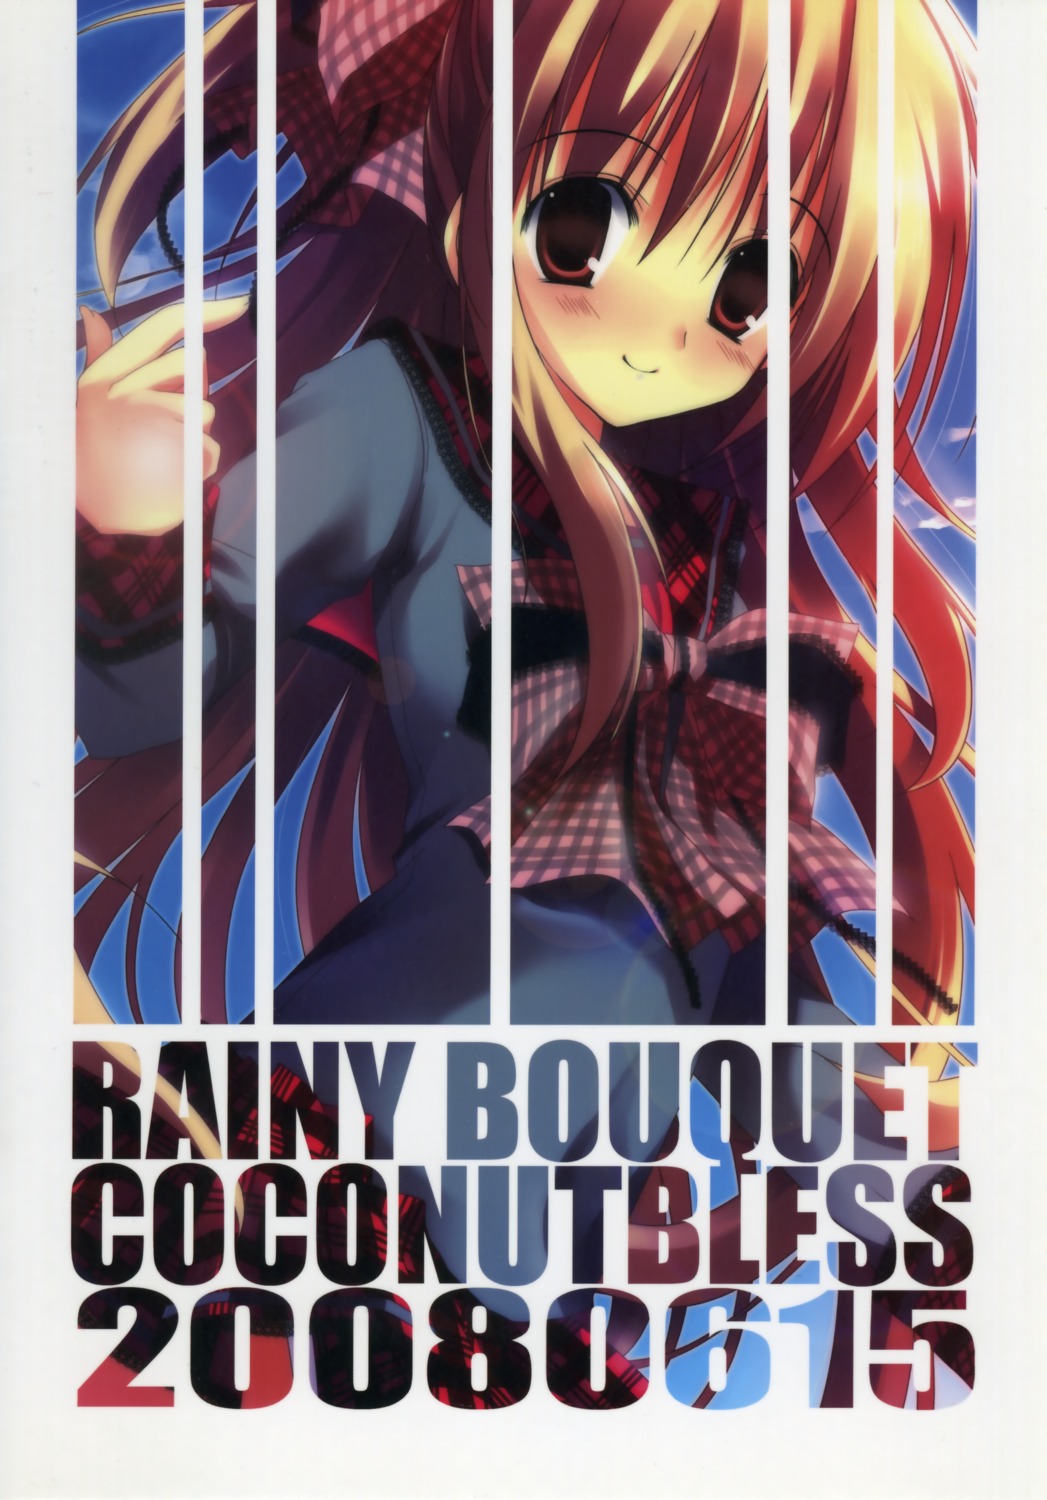 coconutbless natsuki_coco seifuku